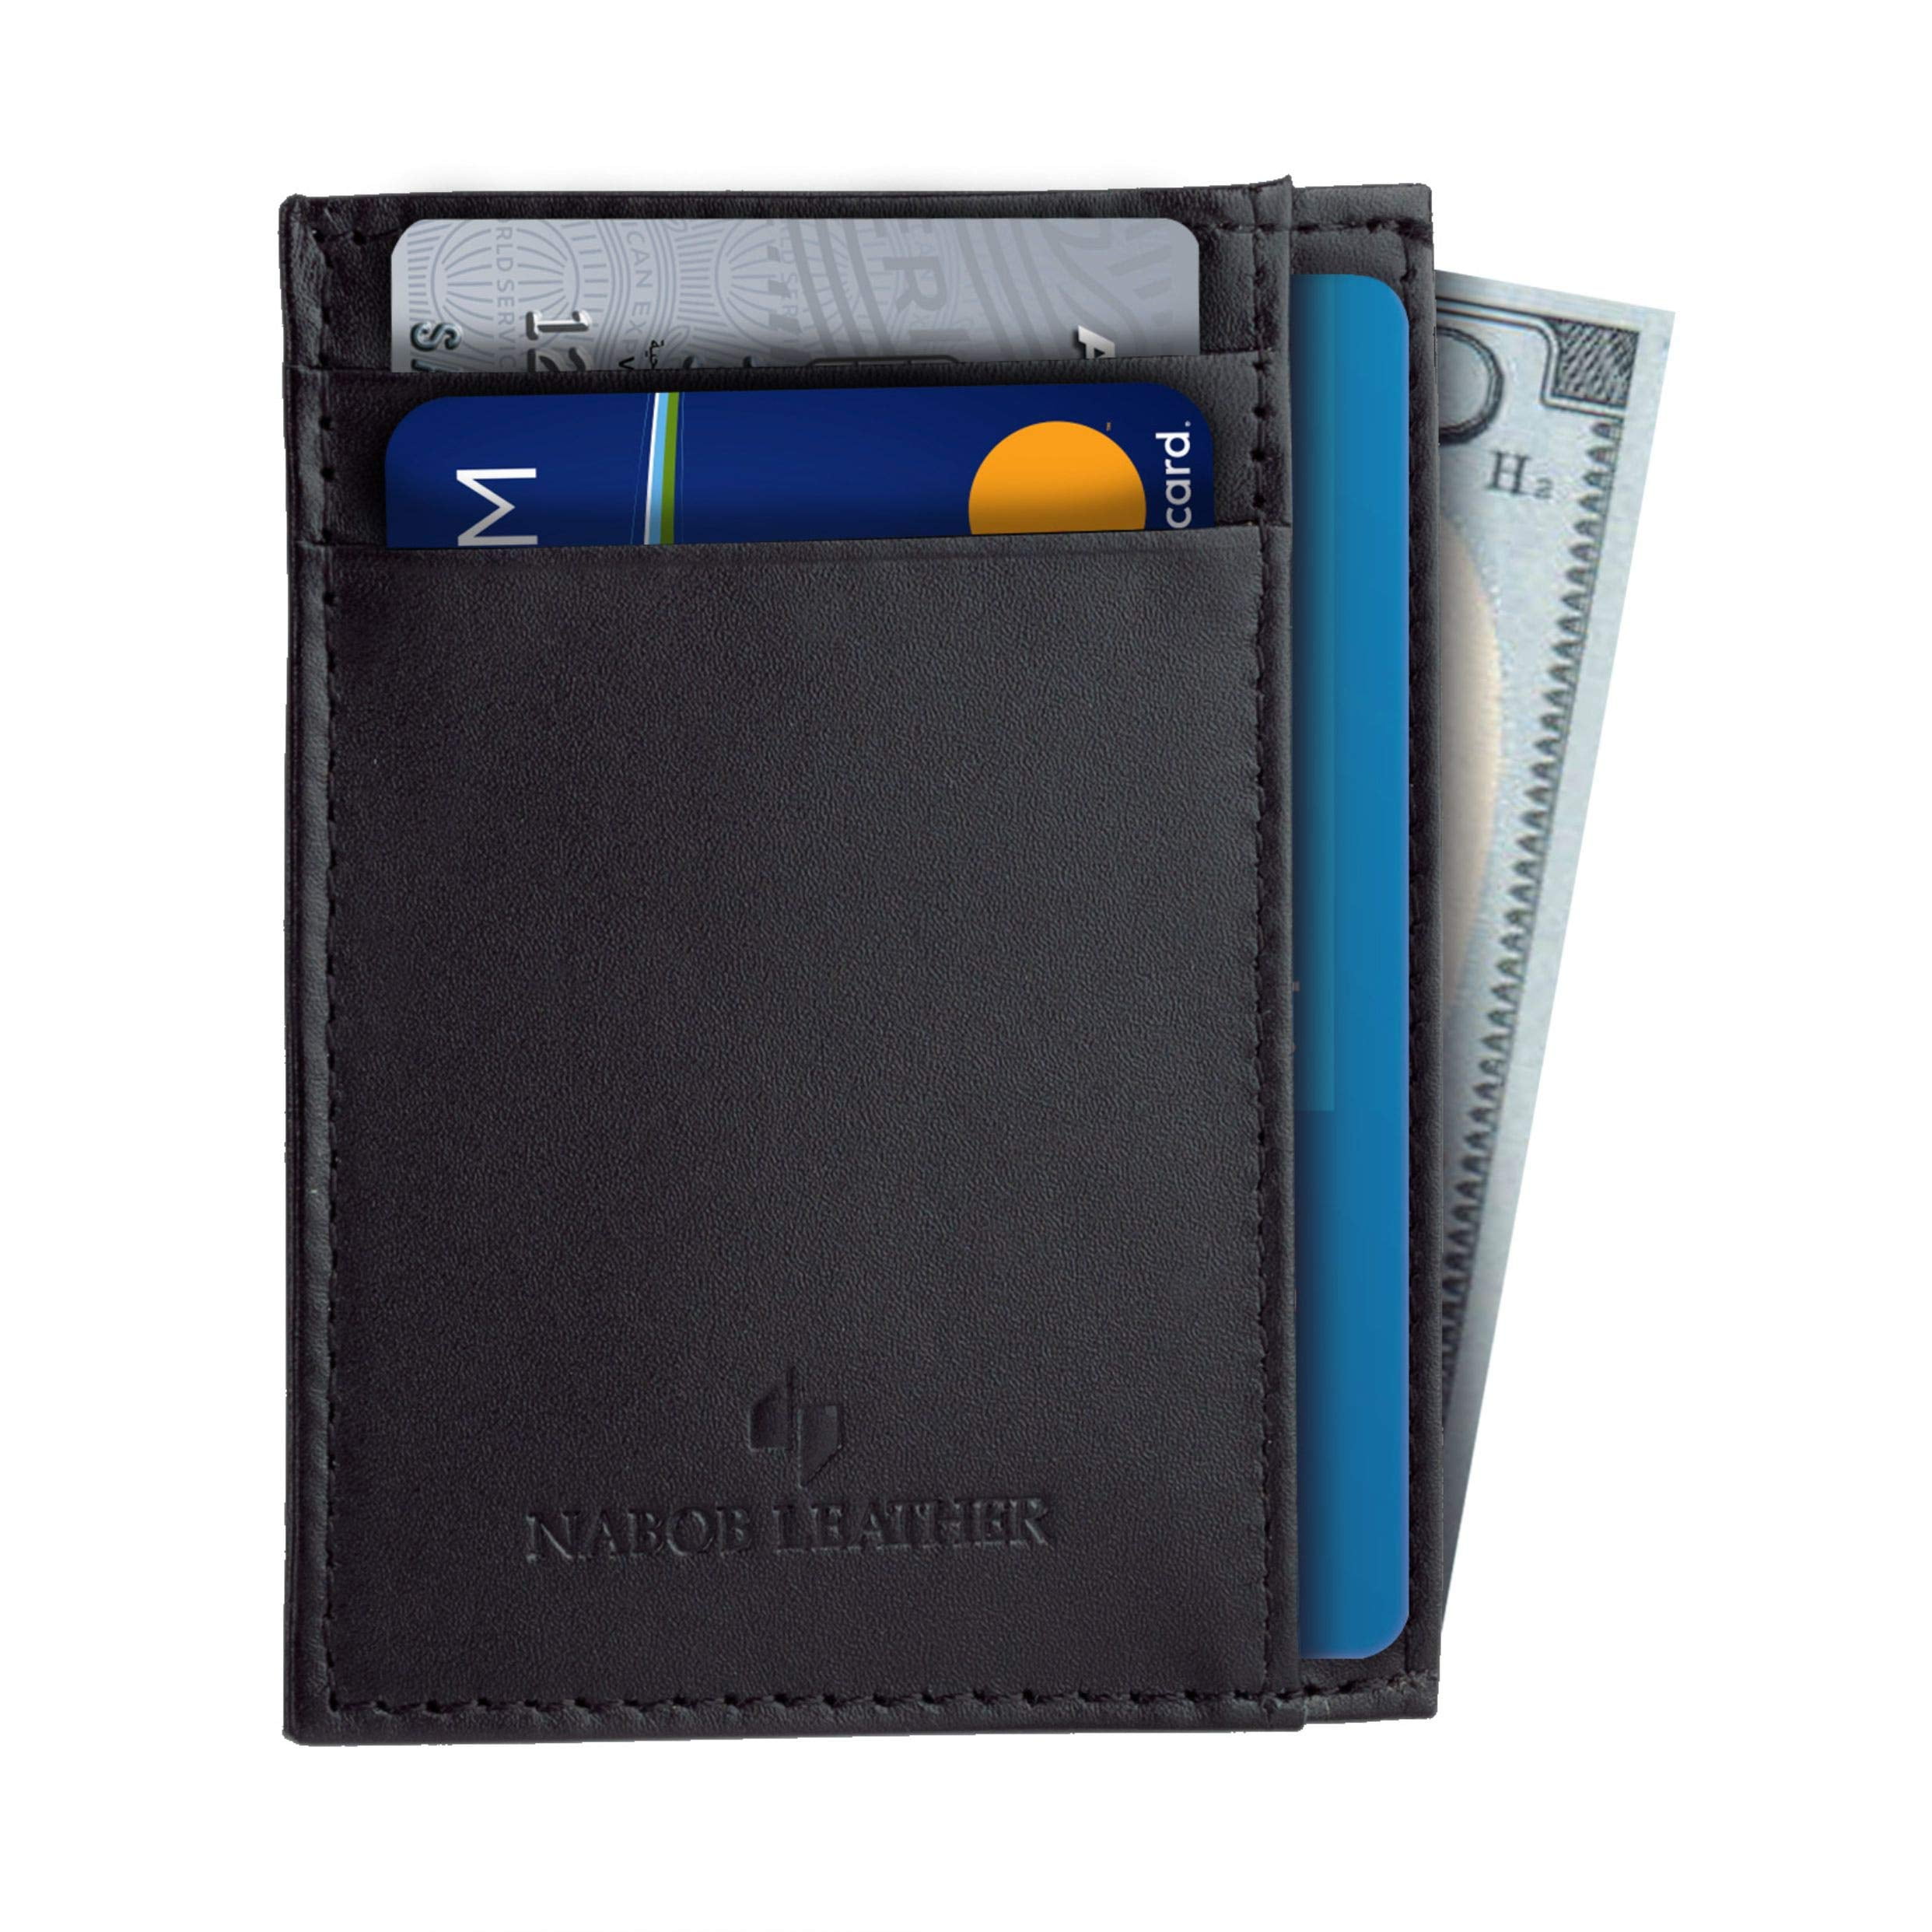 NEXTKIN Snap Button Leather RFID Blocking Minimalist Bifold Card Wallet,  Black